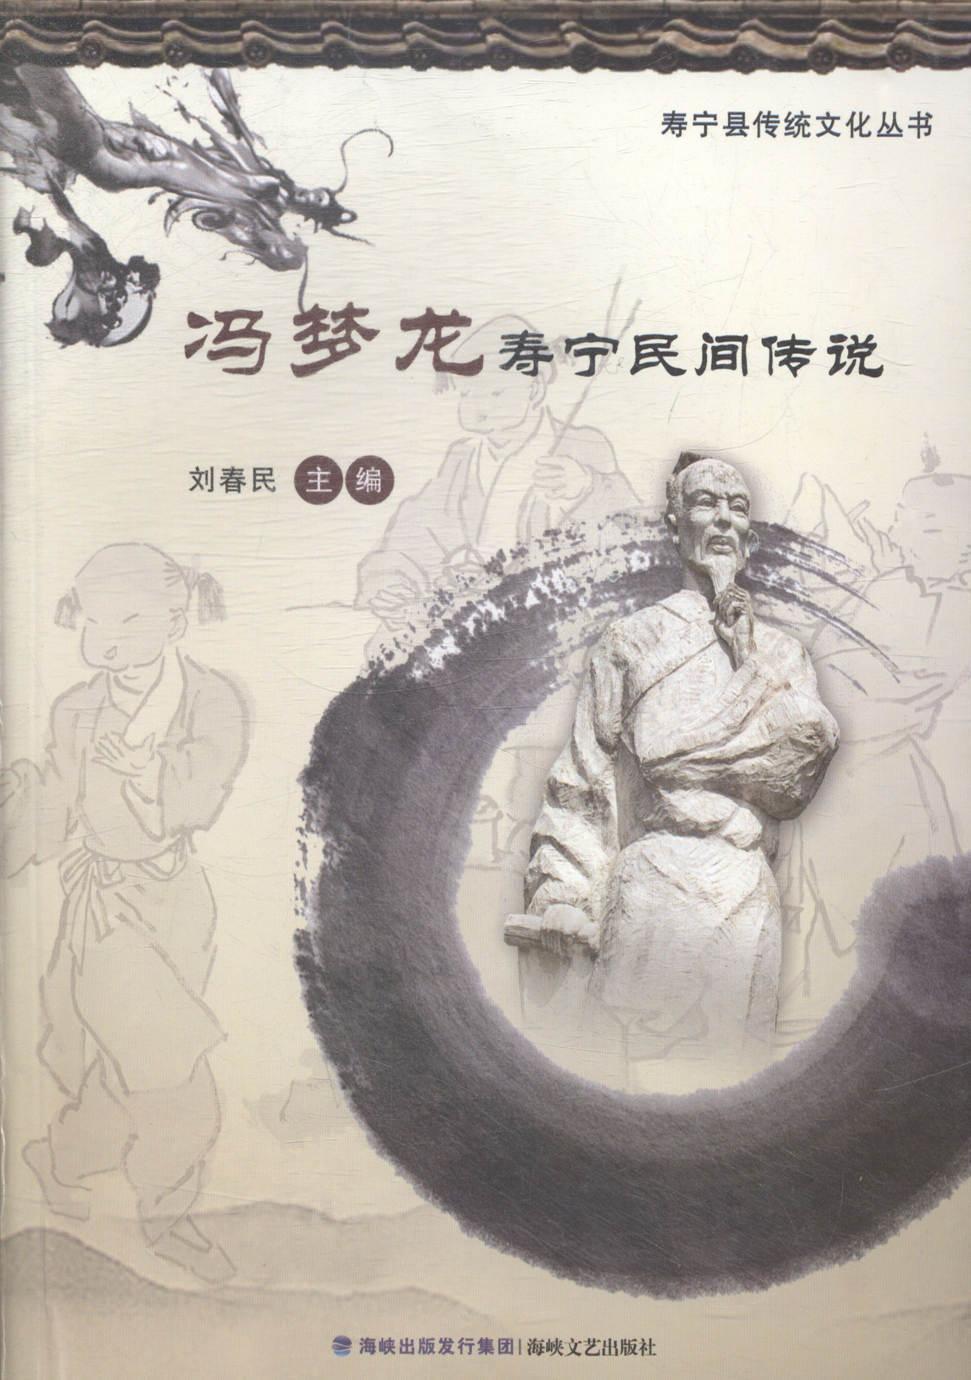 冯梦龙寿宁民间传说刘春民 民间故事作品集中国文学书籍